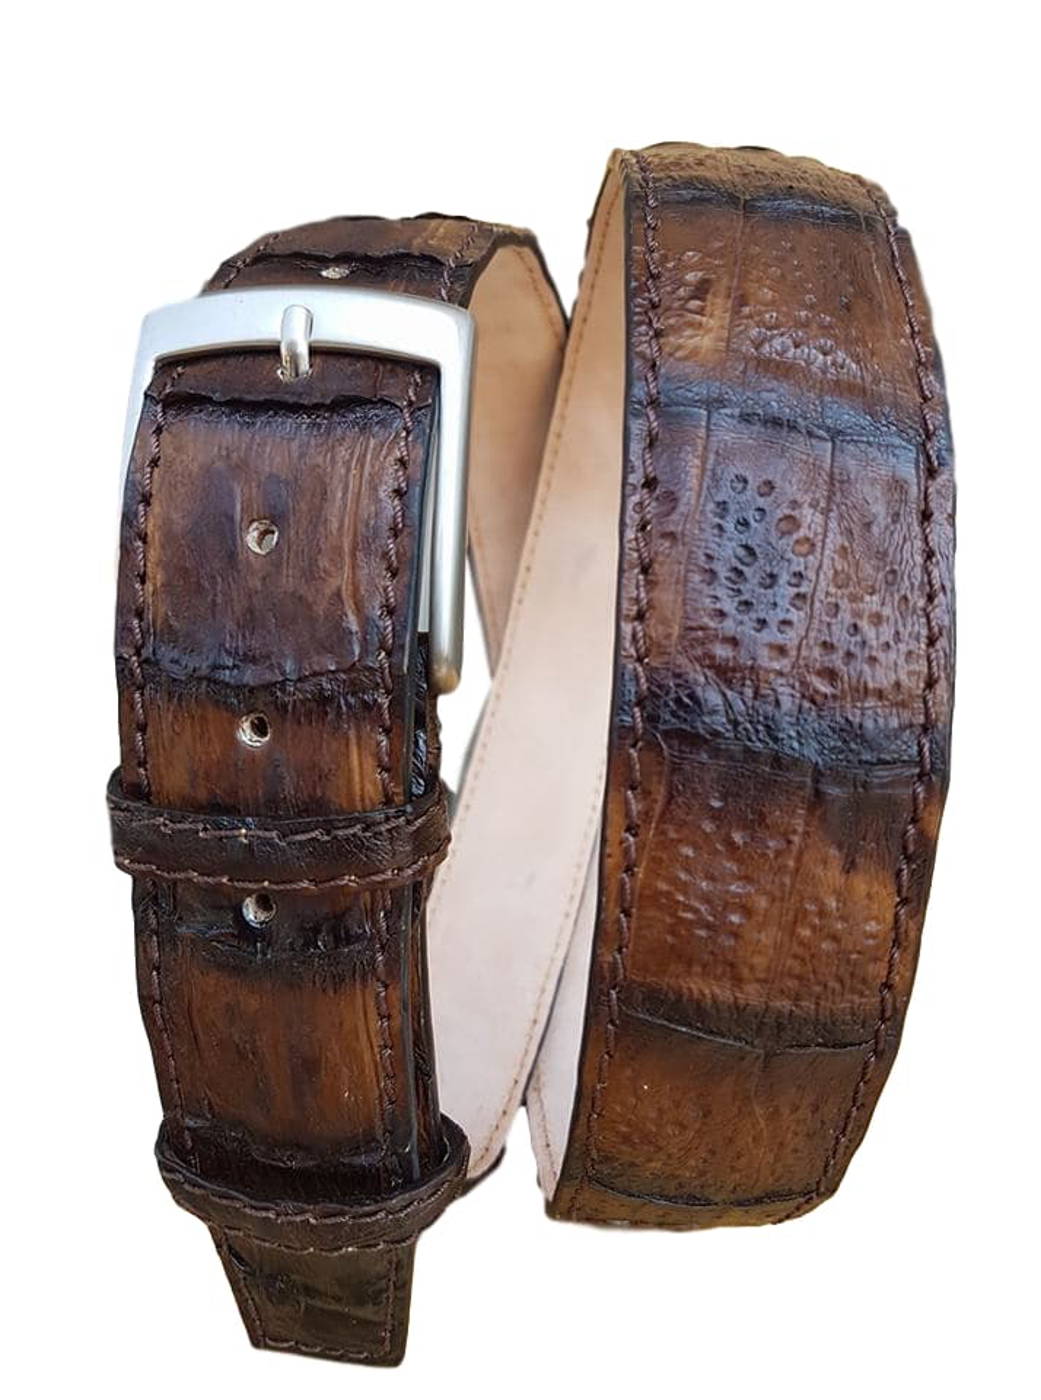 Cintura 4 cm in Coda di Coccodrillo Tinta a mano con fibbia anallergica